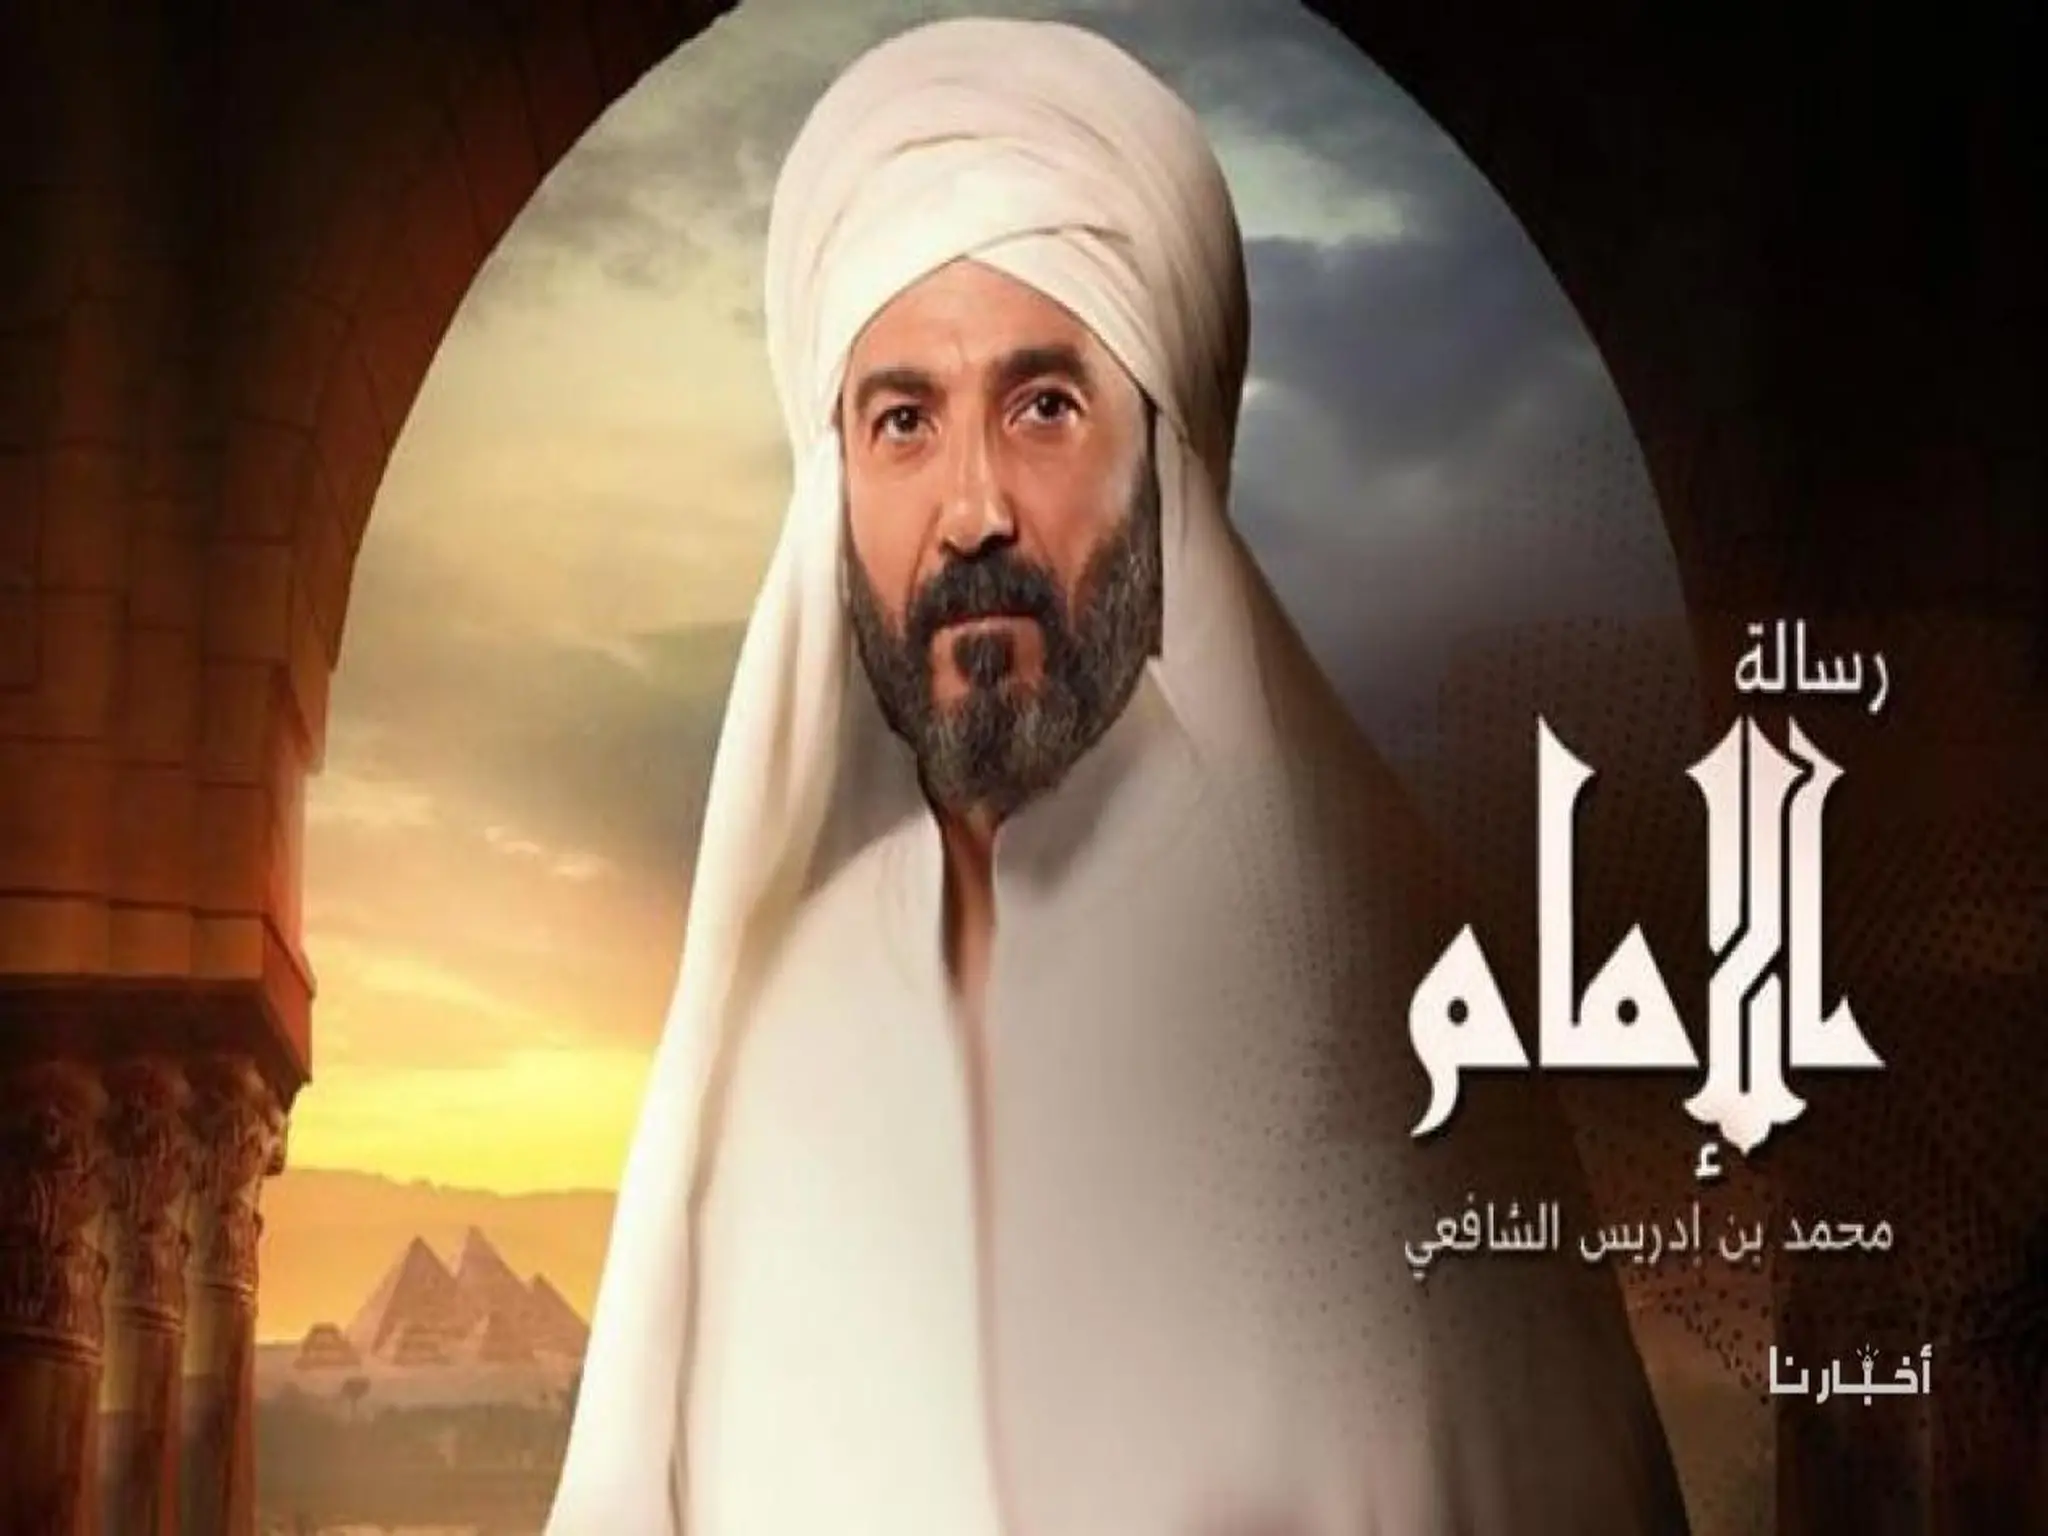 مواعيد مسلسل رسالة الامام بطولة خالد النبوي و القنوات الناقلة للمسلسل 2023